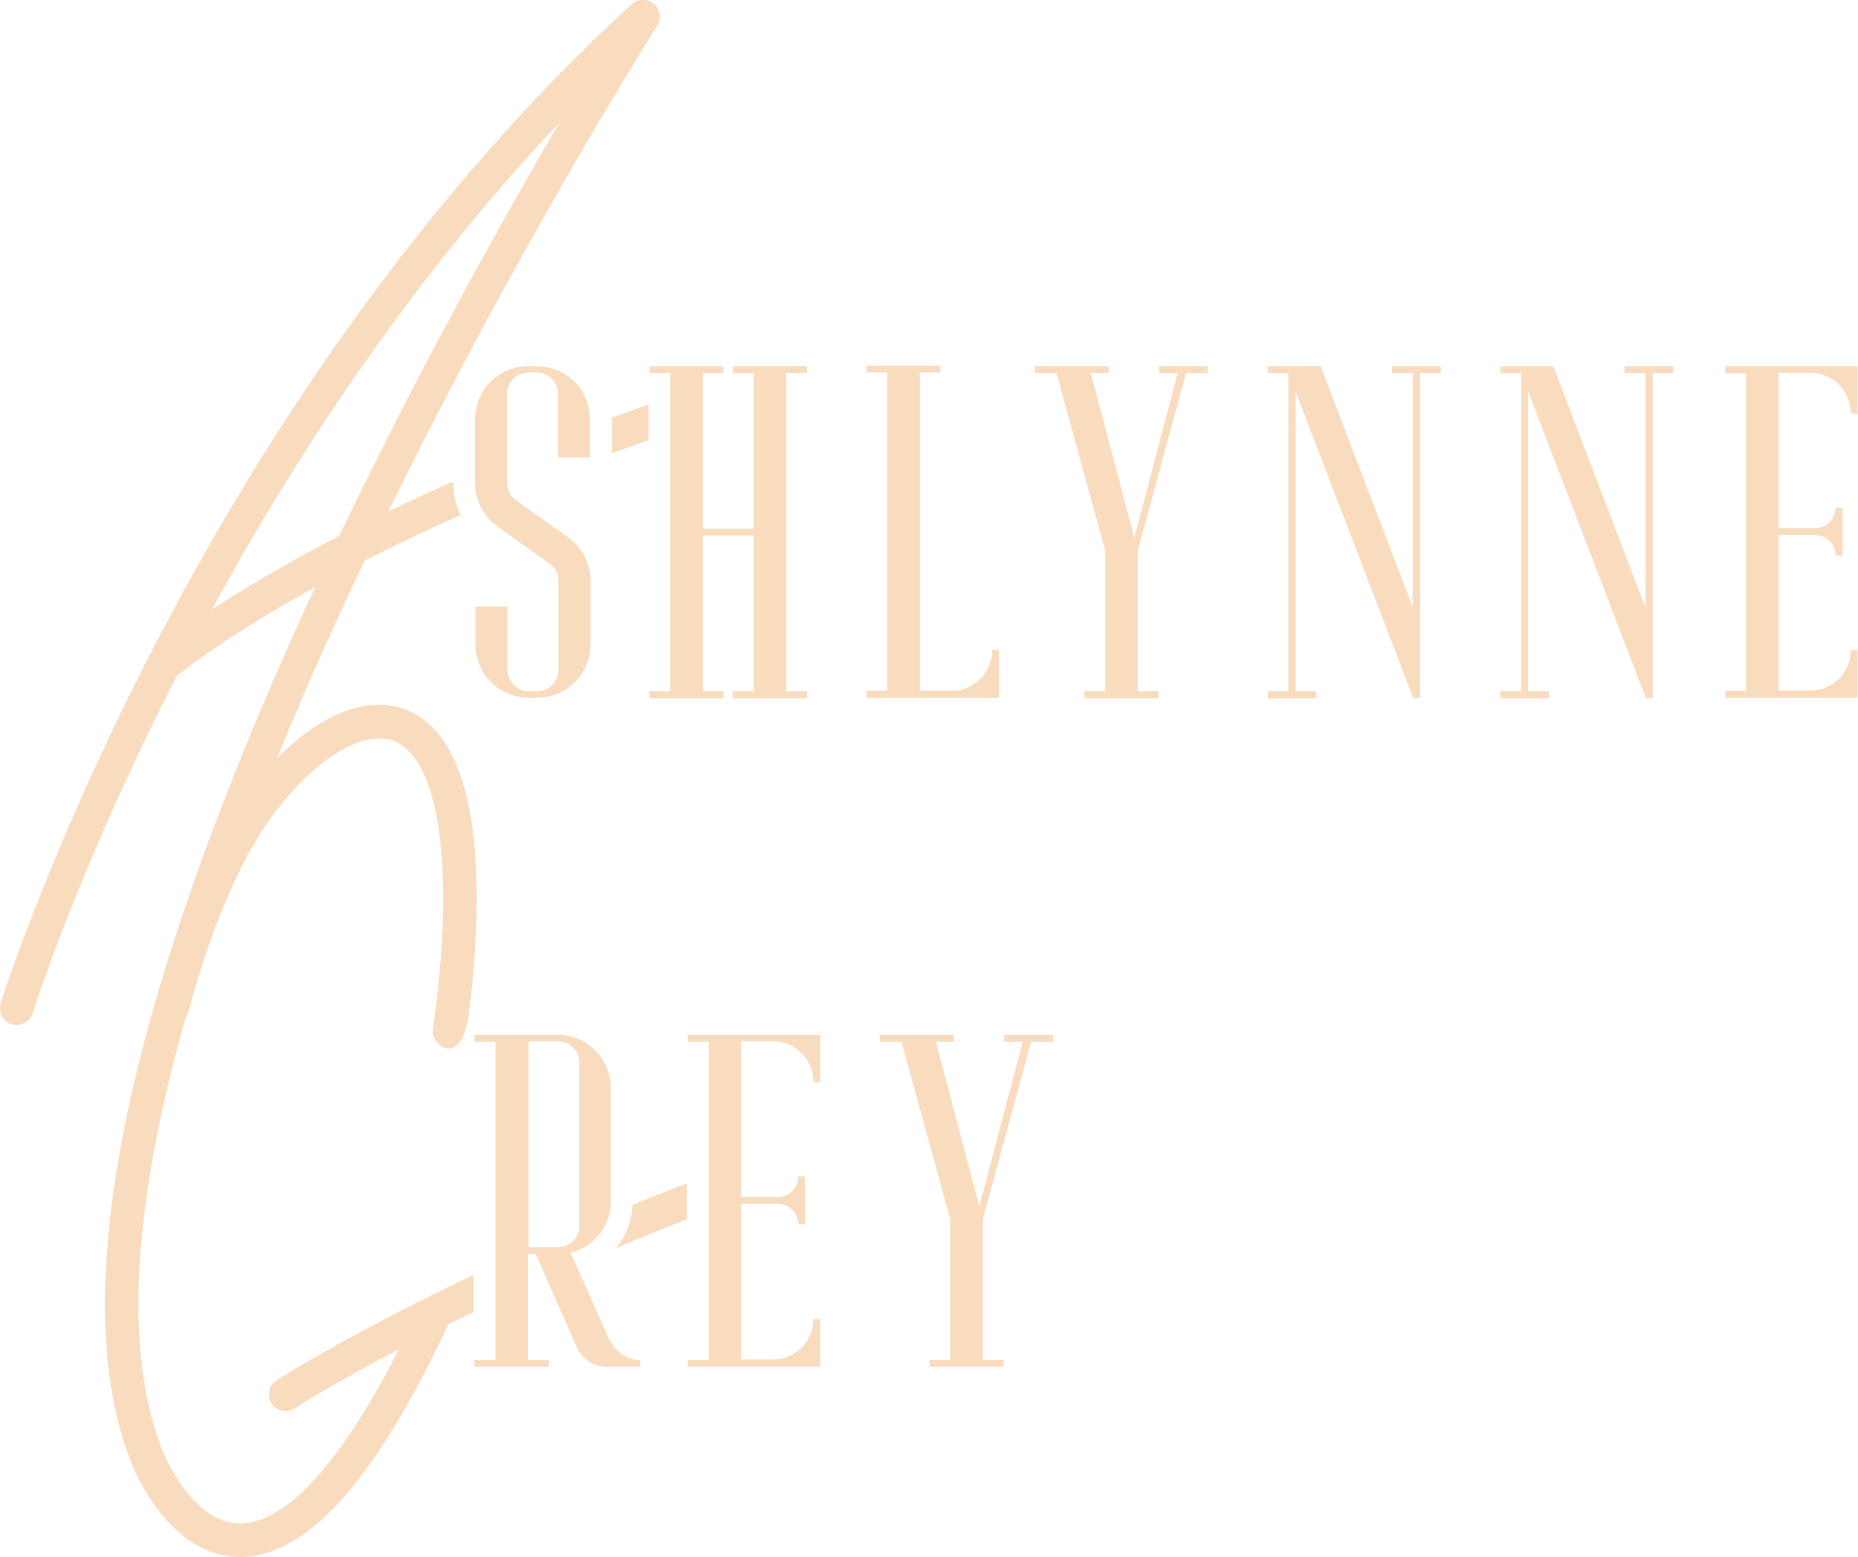 Ashlynne Grey